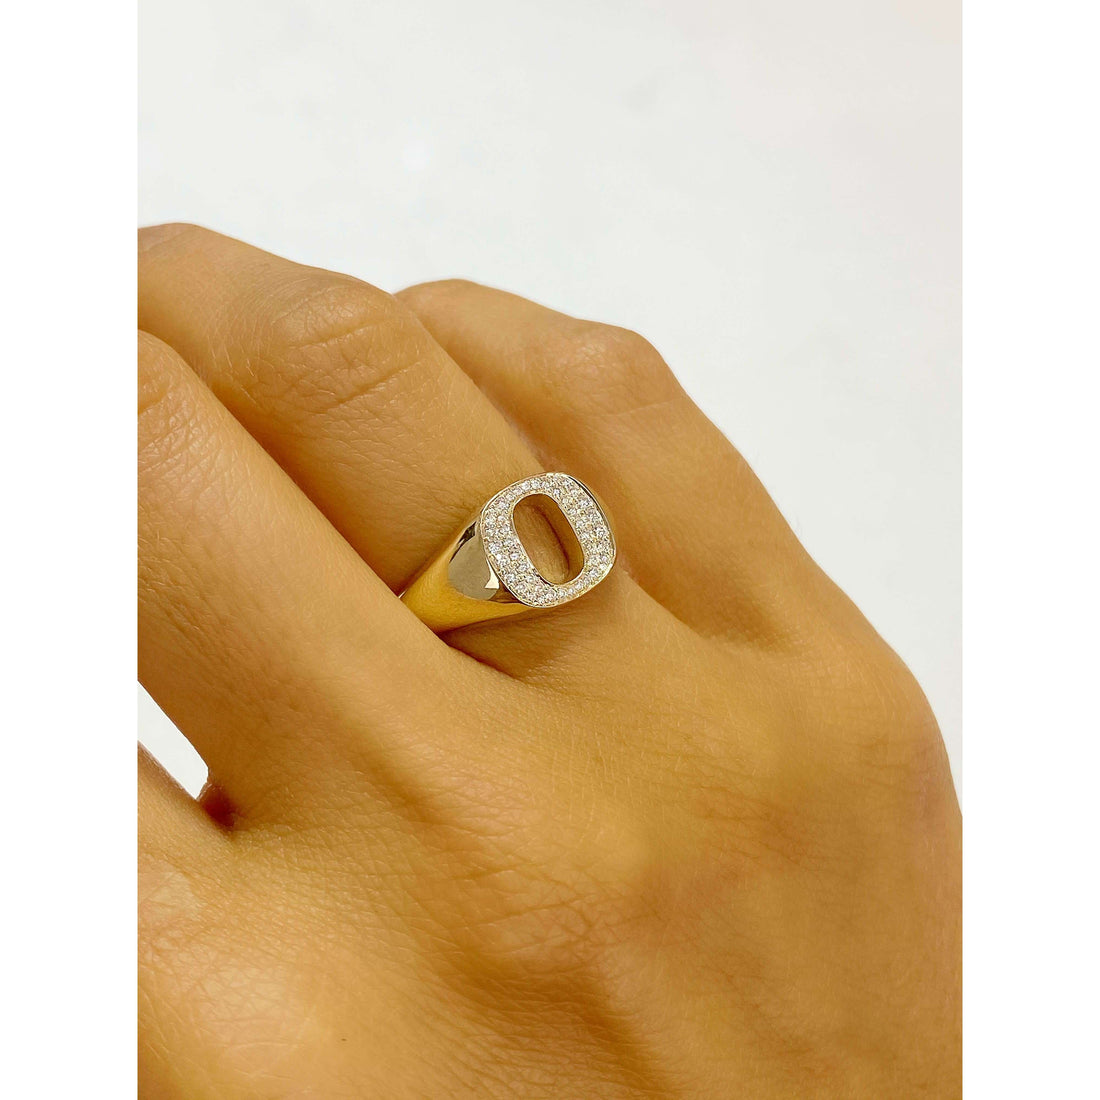 University of Oregon O Diamond Ring modeled